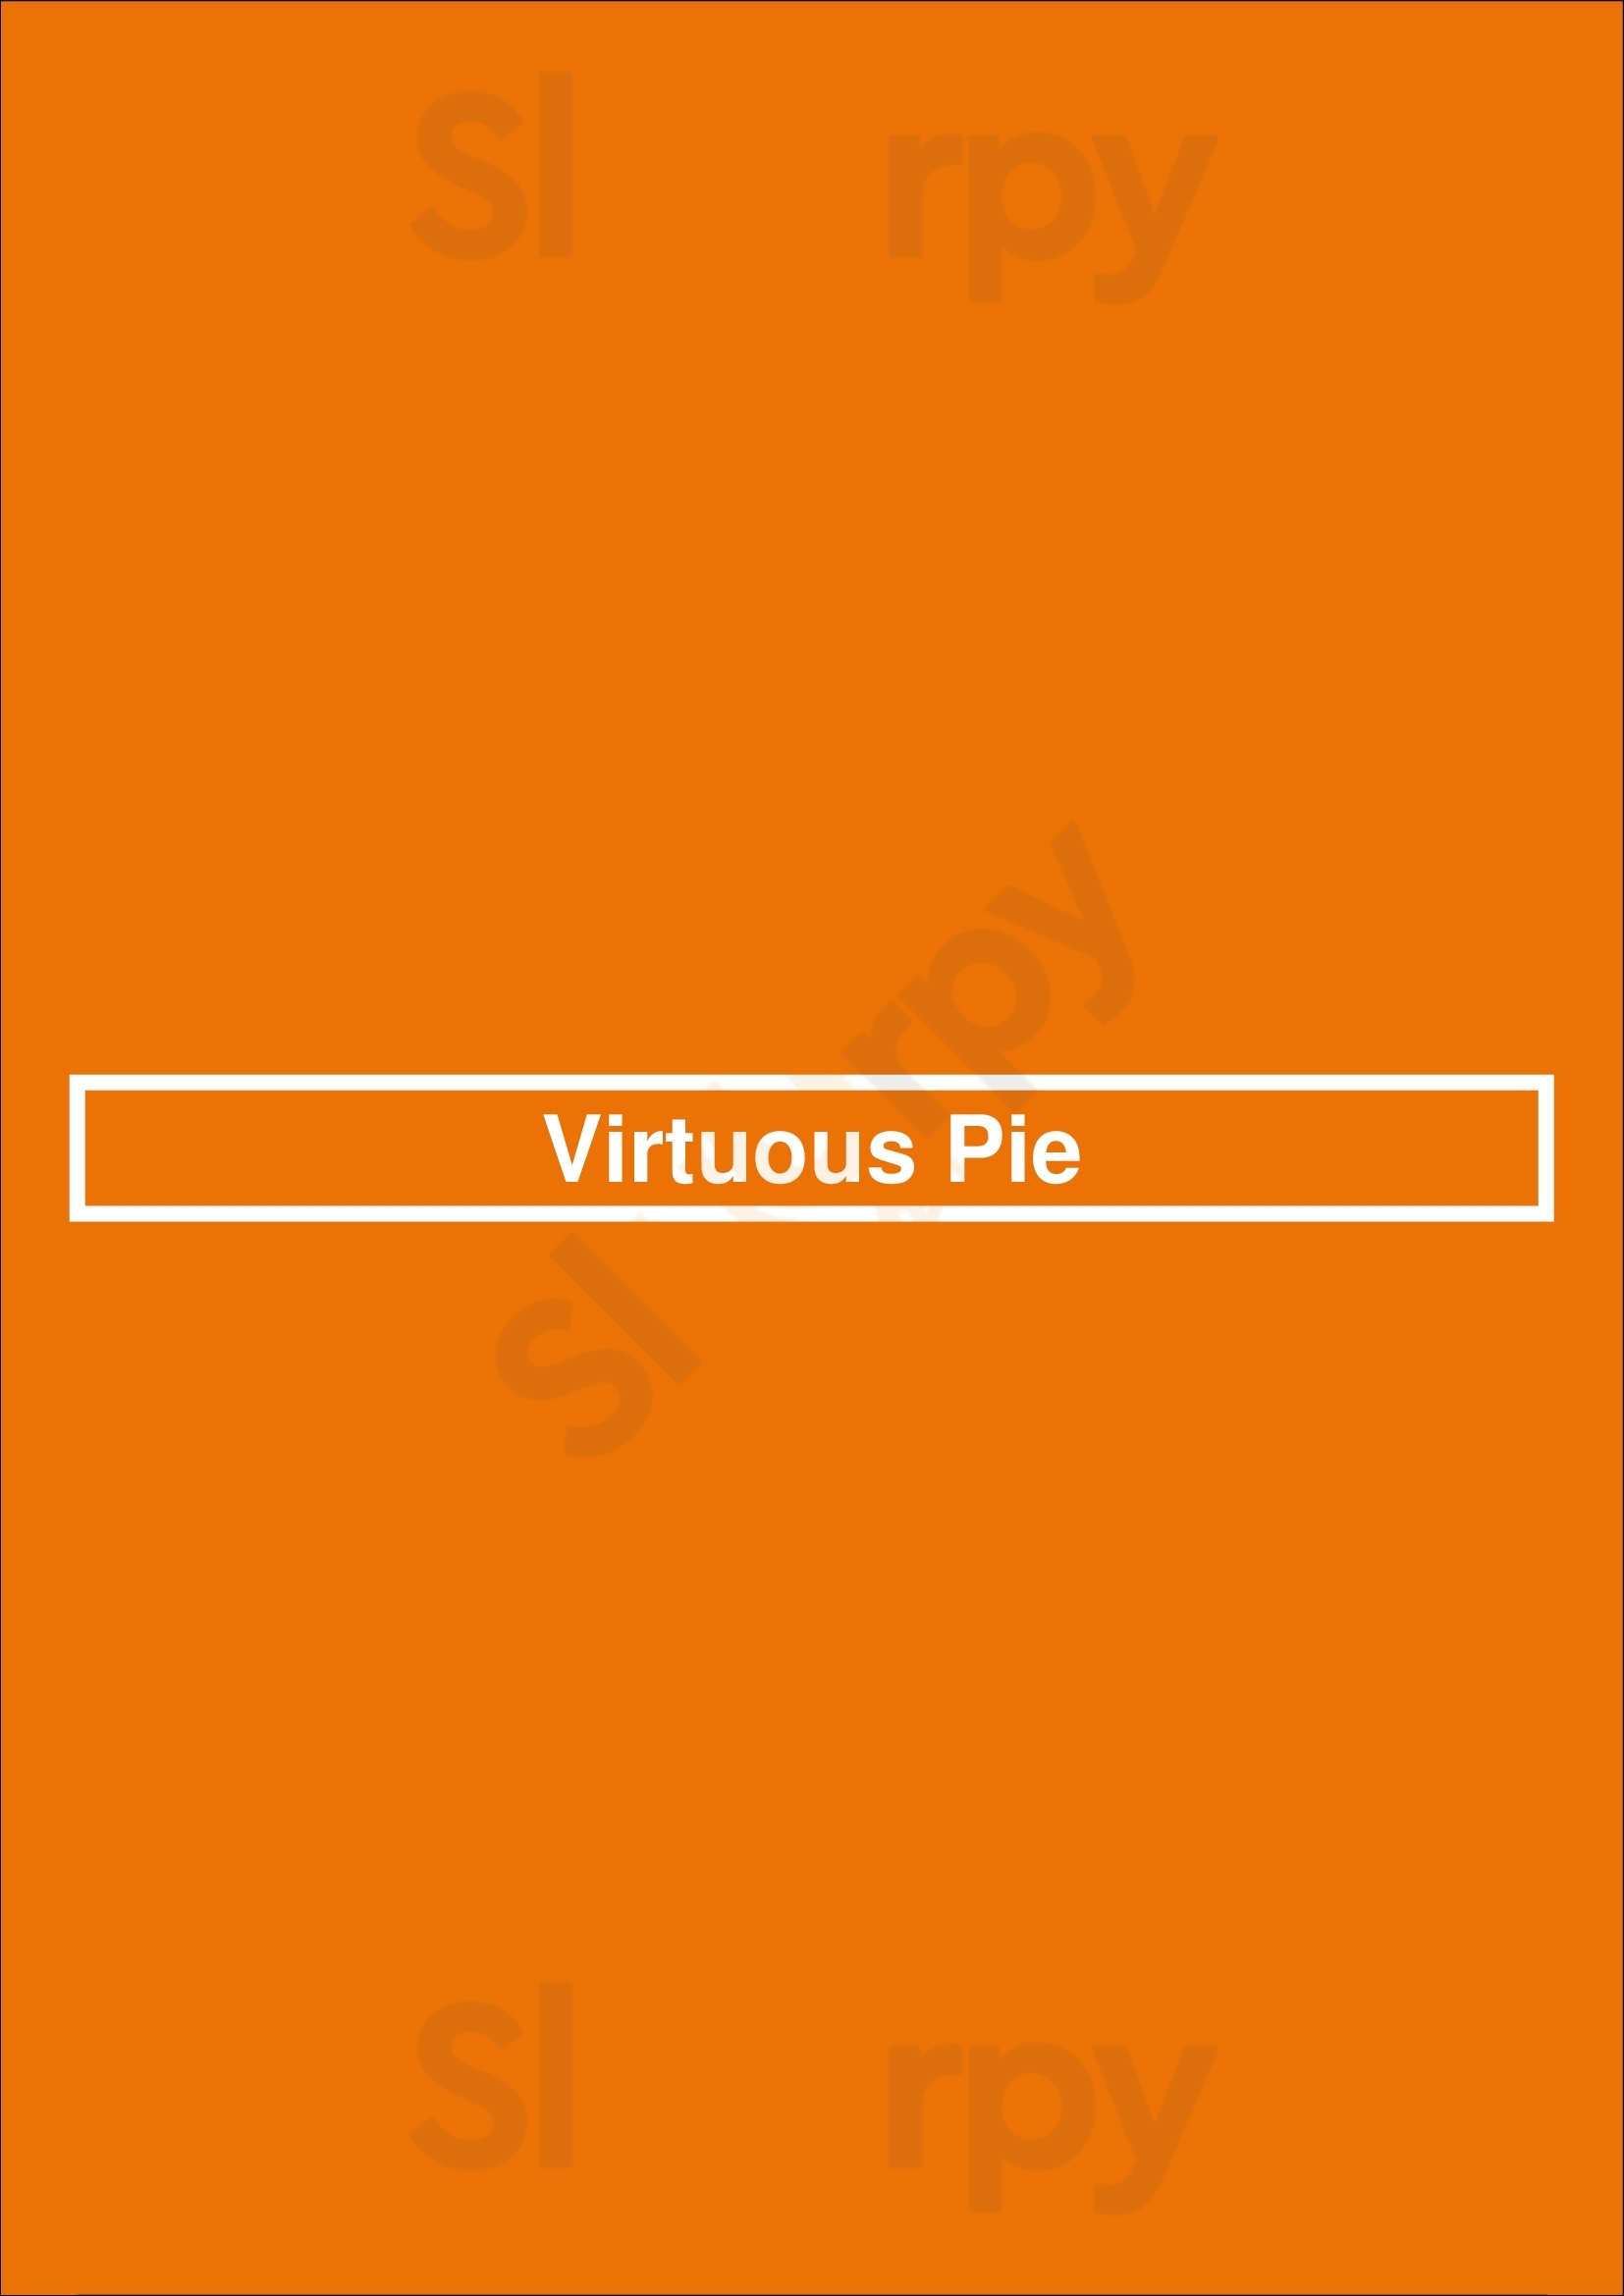 Virtuous Pie Vancouver Menu - 1